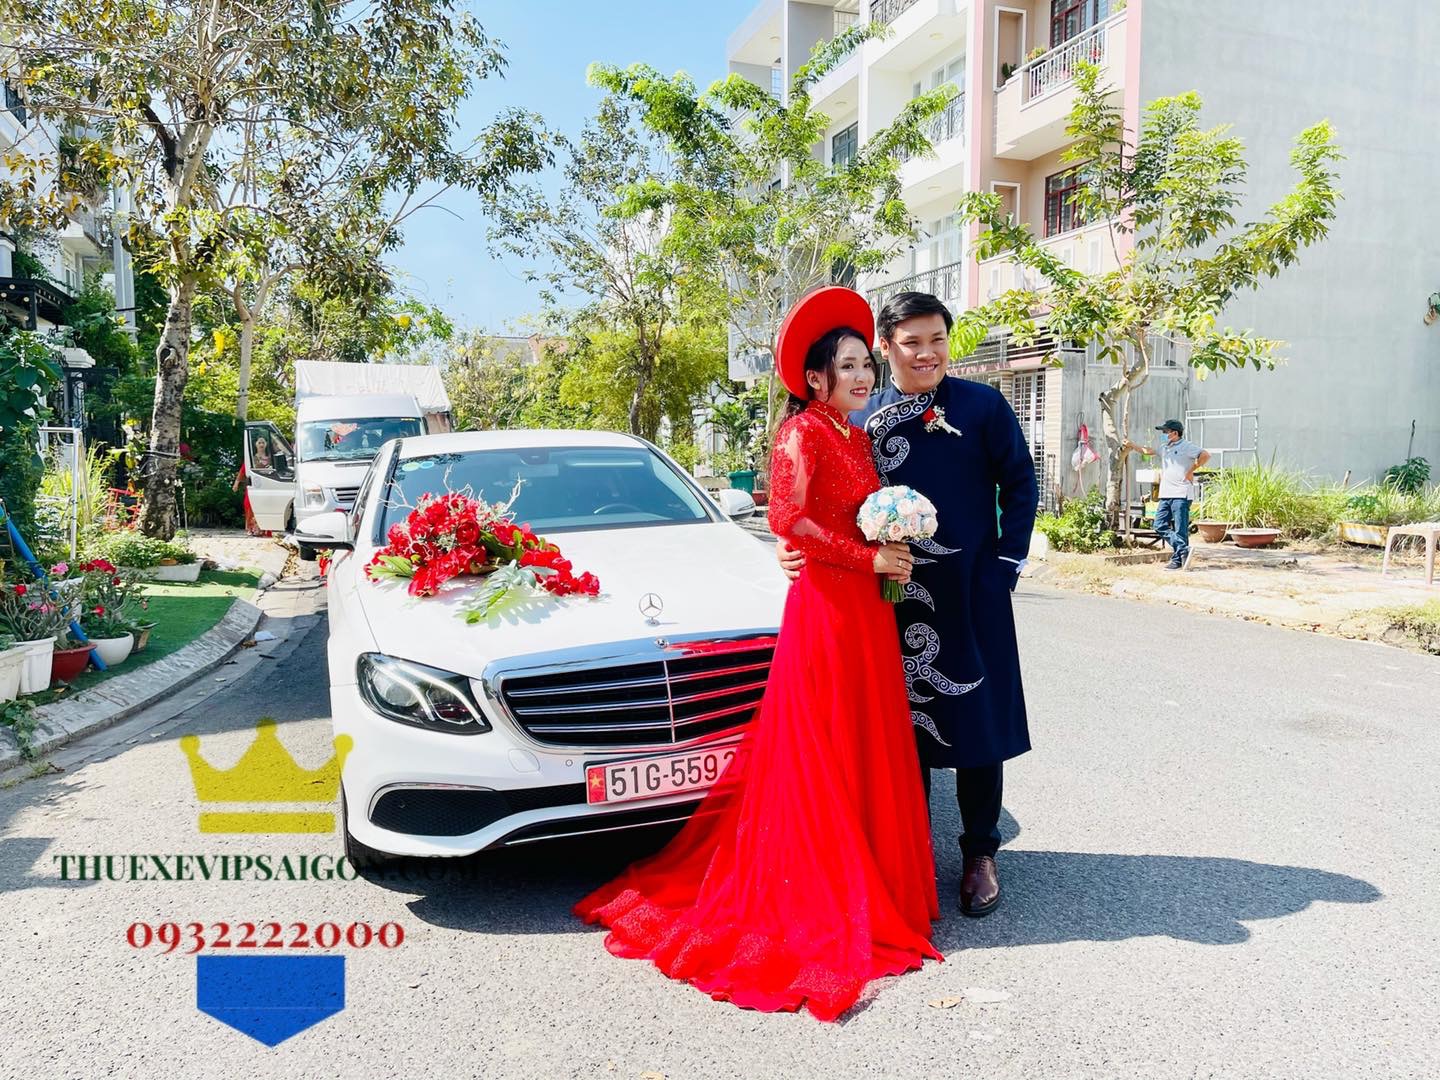 Vip Cars Bảo Dương cho thuê xe cưới hạng sang Mercedes E Class